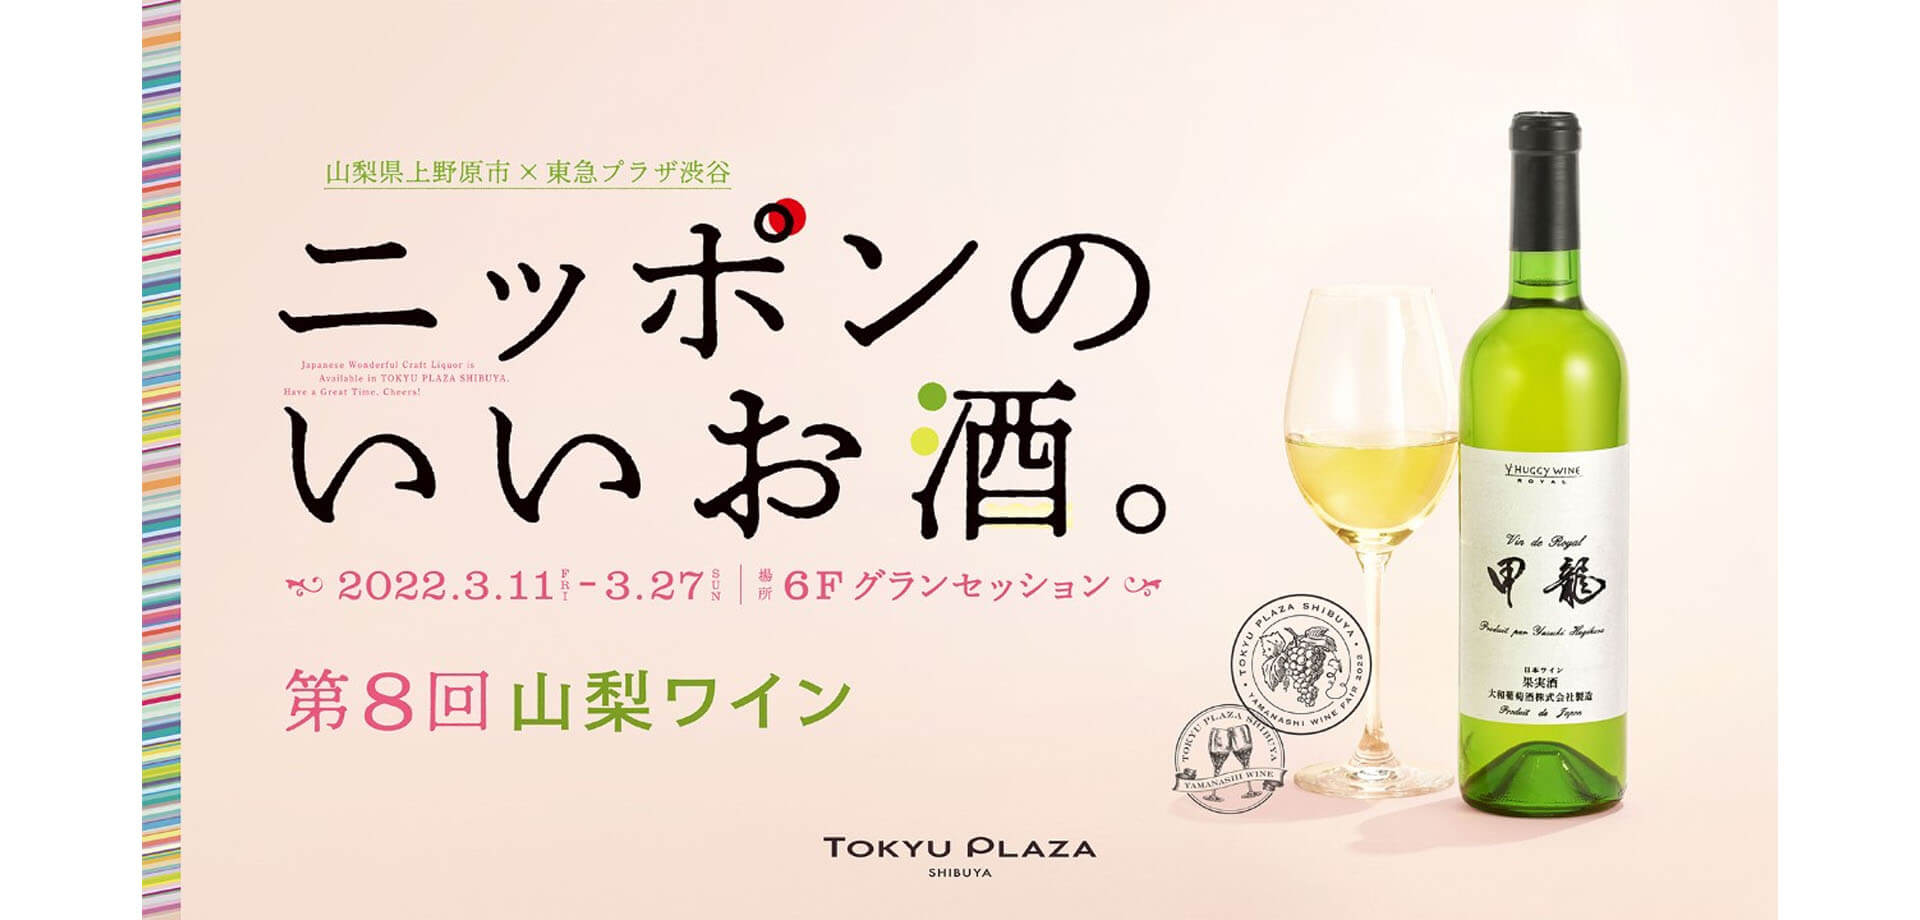 「ニッポンのいいお酒。 第8回山梨ワイン」東急プラザ渋谷